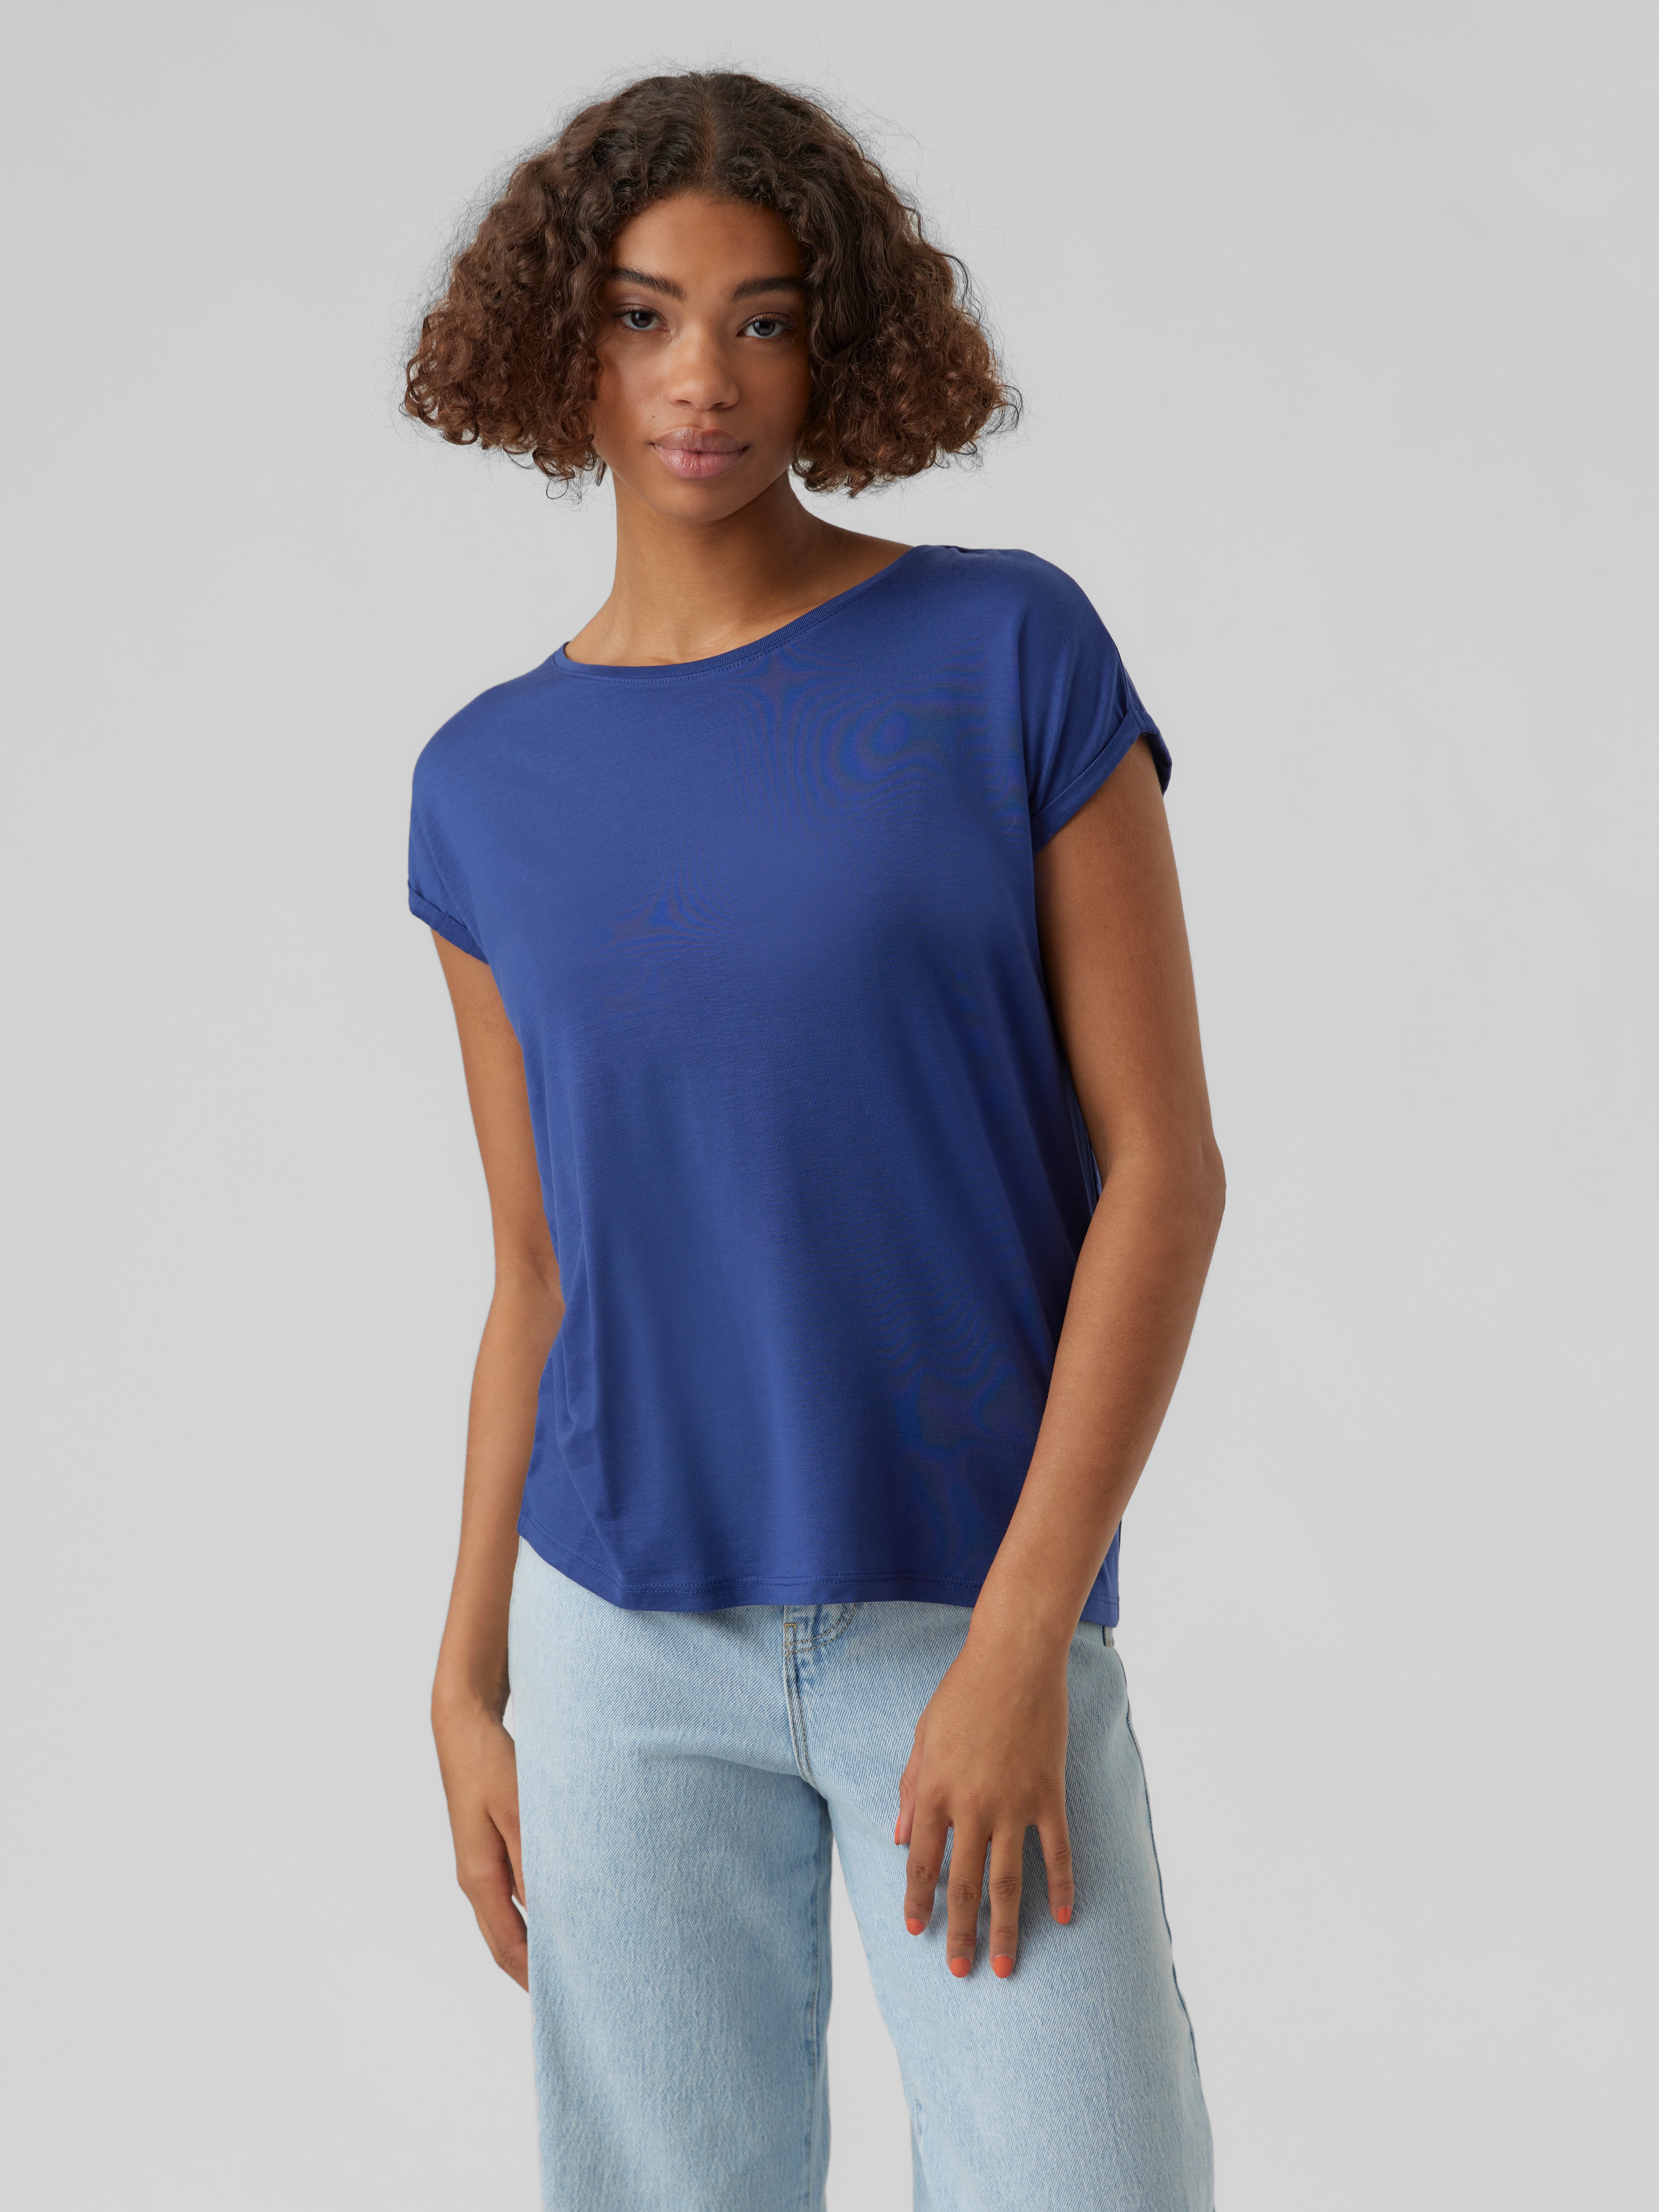 Moda Koszulki Szydełkowane koszulki Vero Moda Szyde\u0142kowana koszulka niebieski W stylu casual 